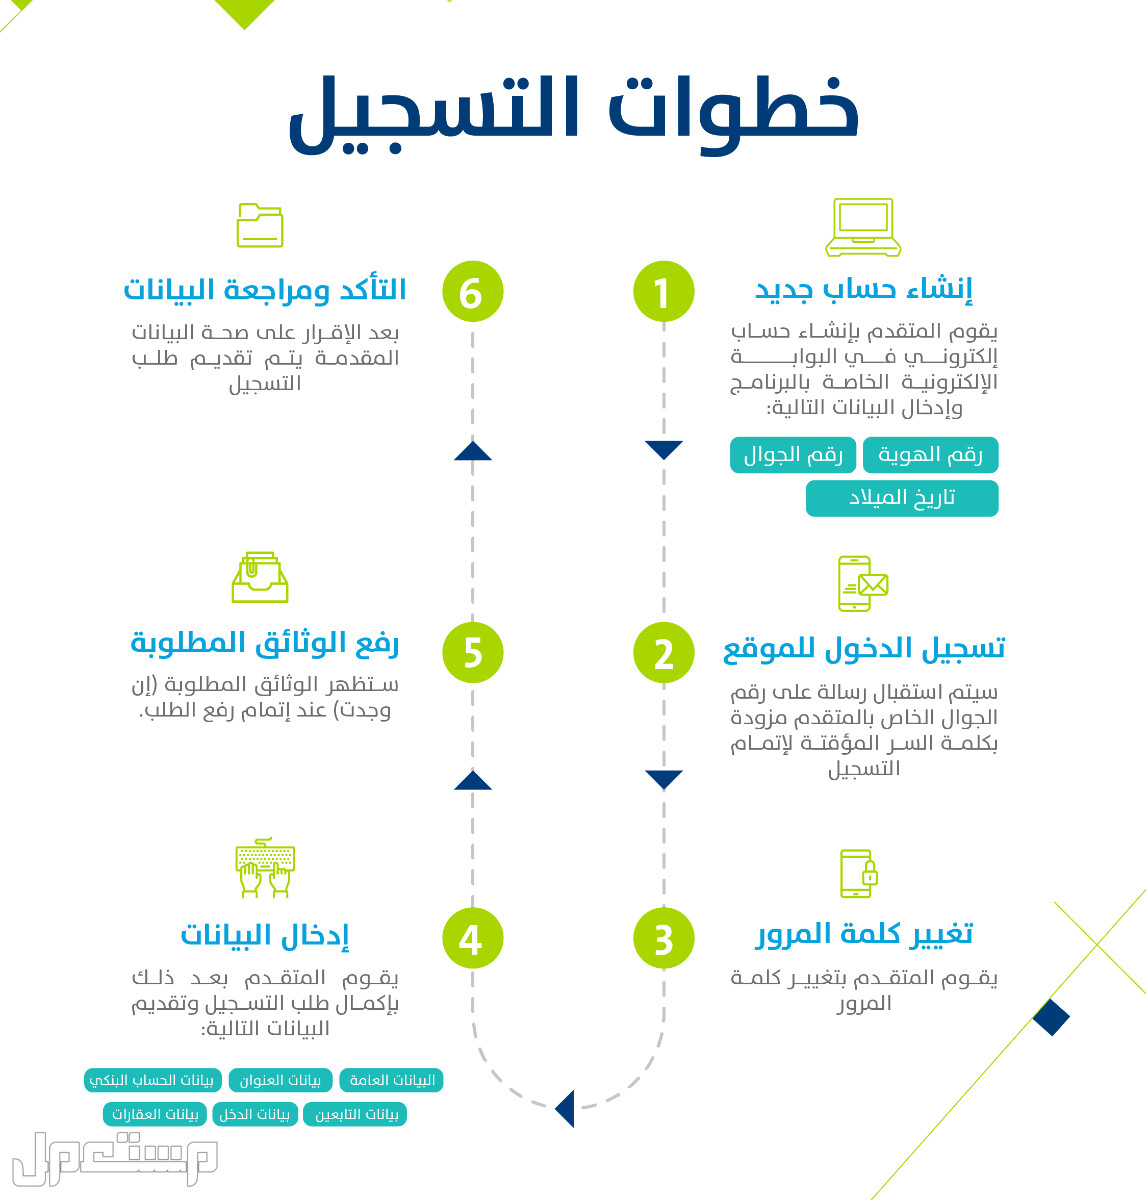 حساب المواطن: تعرف على حقيقة تأثير وثيقة العمل الحر على الدعم في السعودية